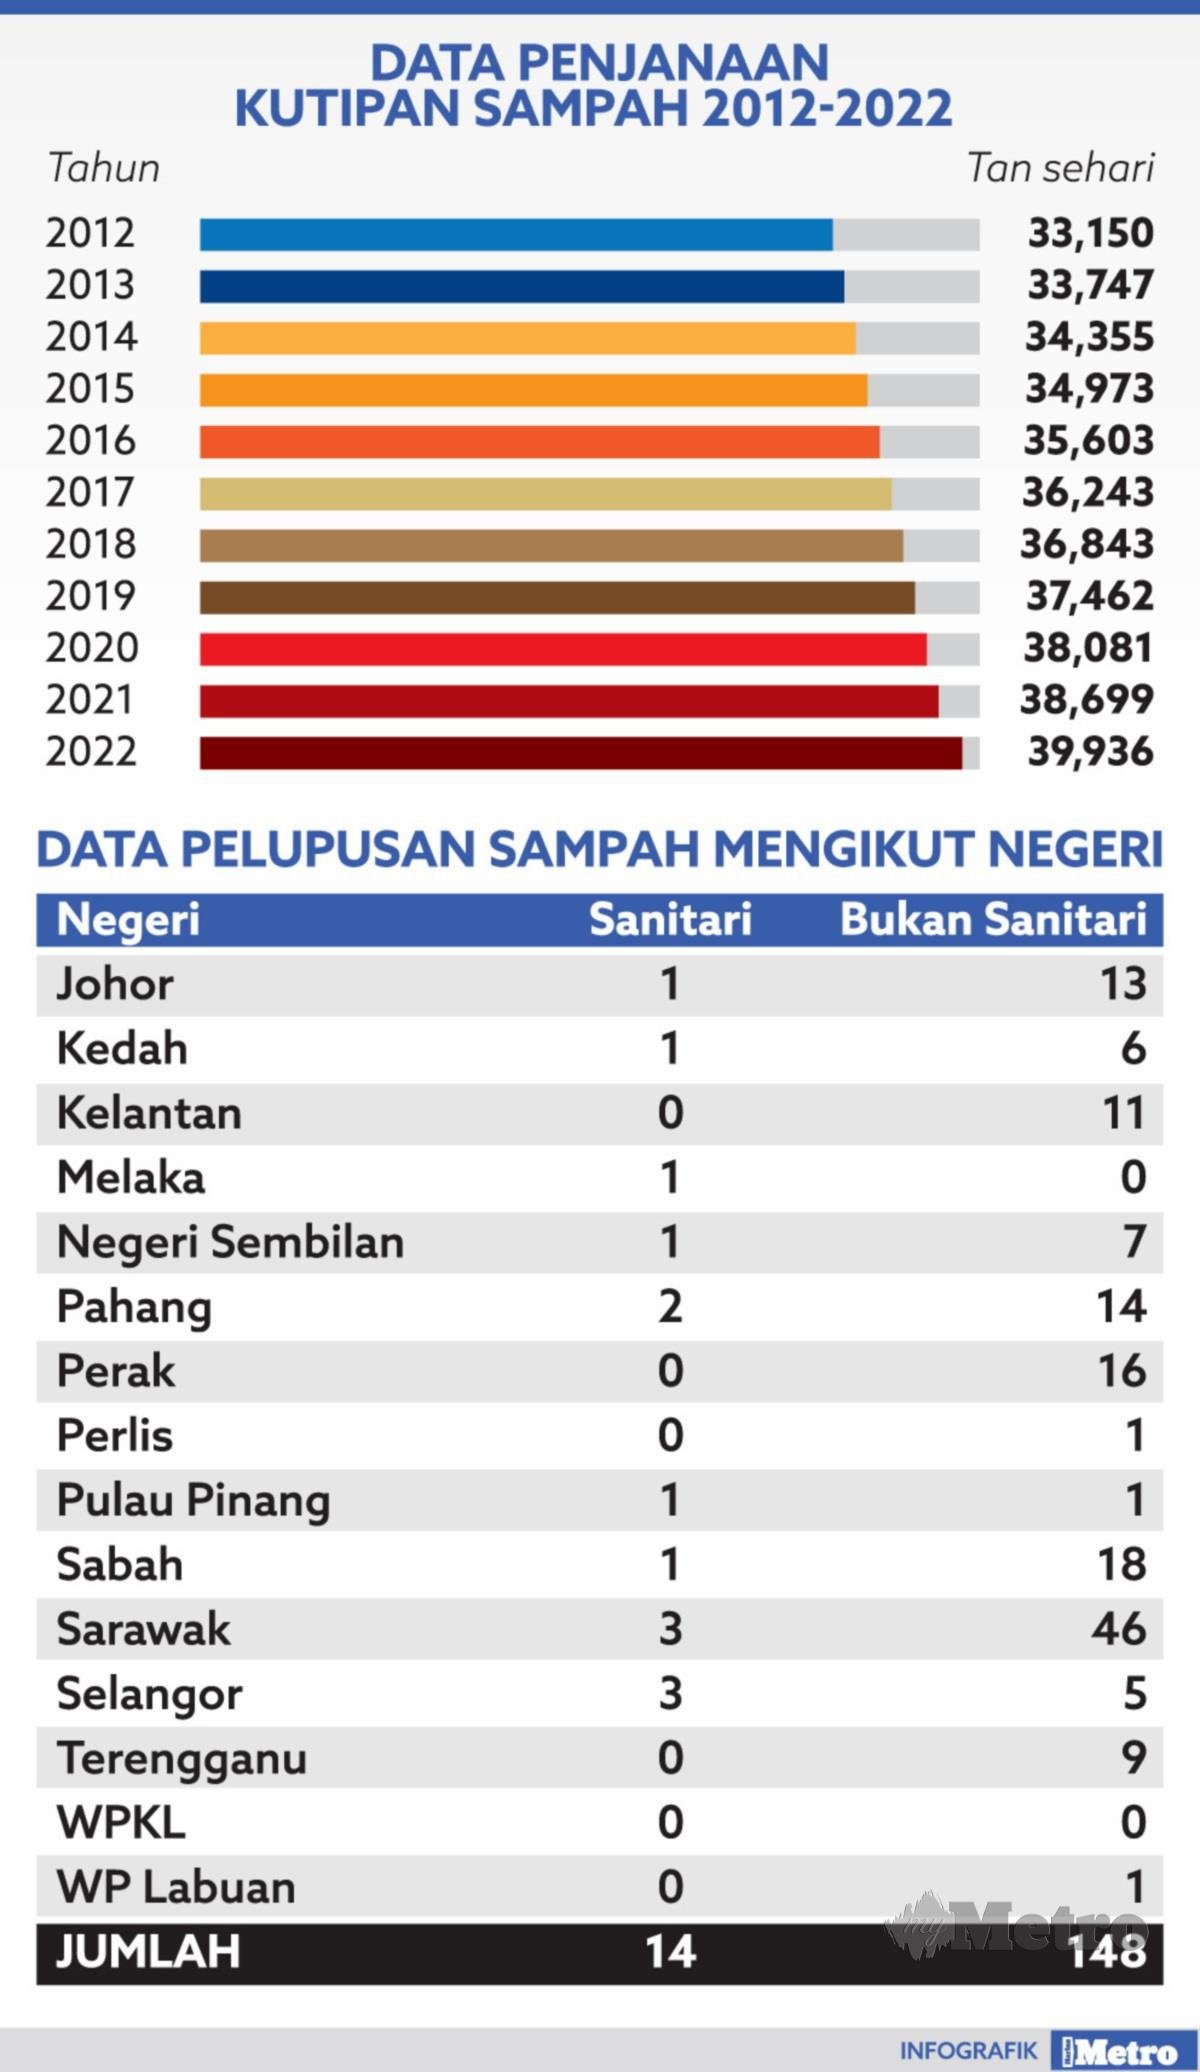 Jumlah rakyat malaysia 2022